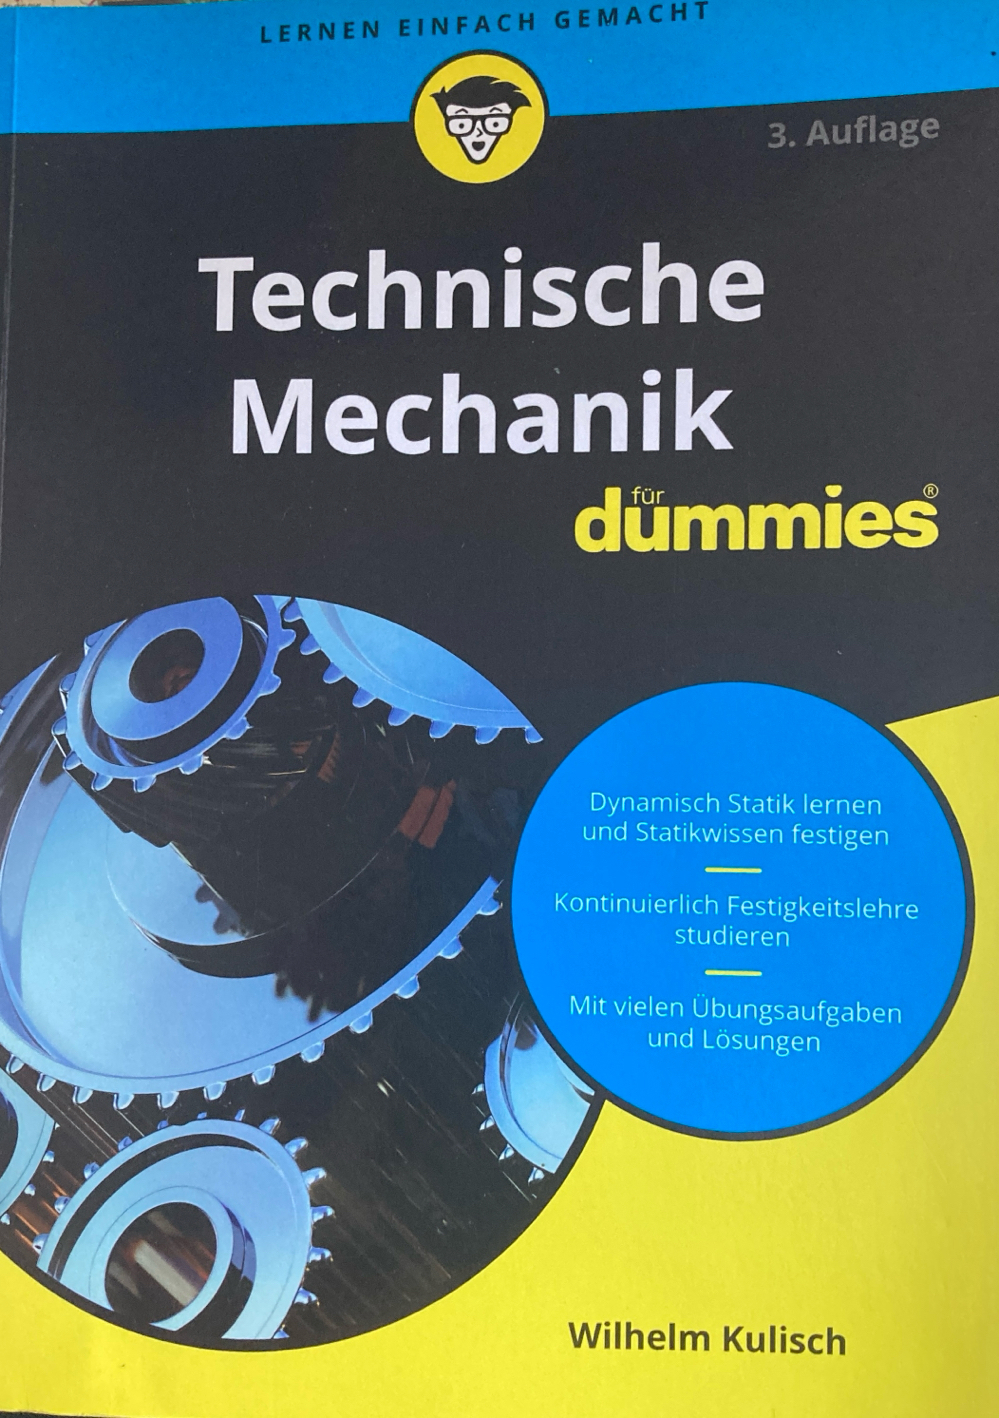 Technische Mechanik für dummies 3. Auflage